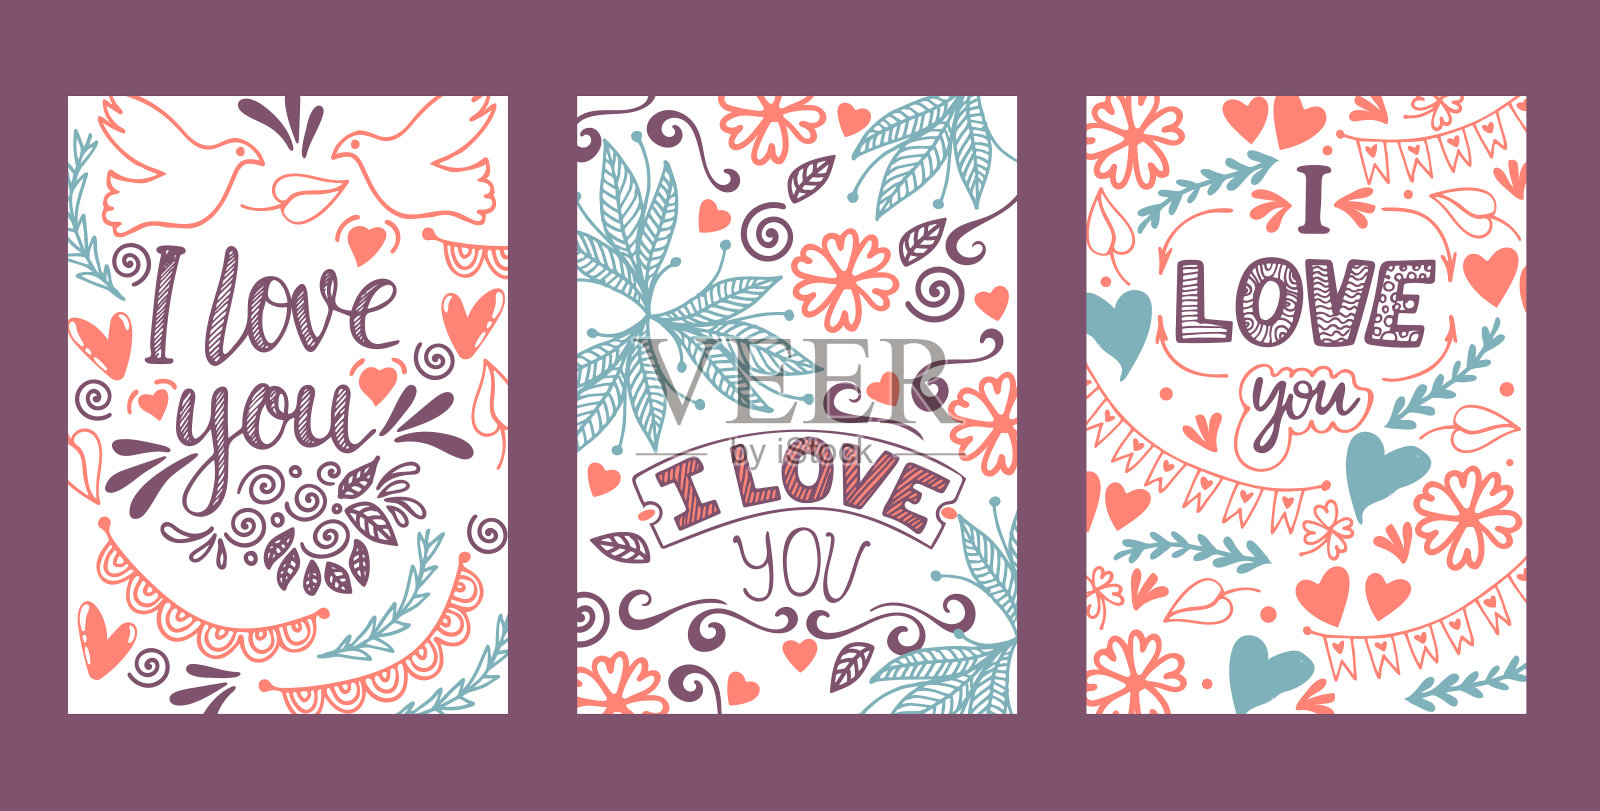 爱的字母向量可爱的书法可爱的标志素描iloveyou在情人节心爱的卡片插图背景集爱装饰排版背景设计模板素材